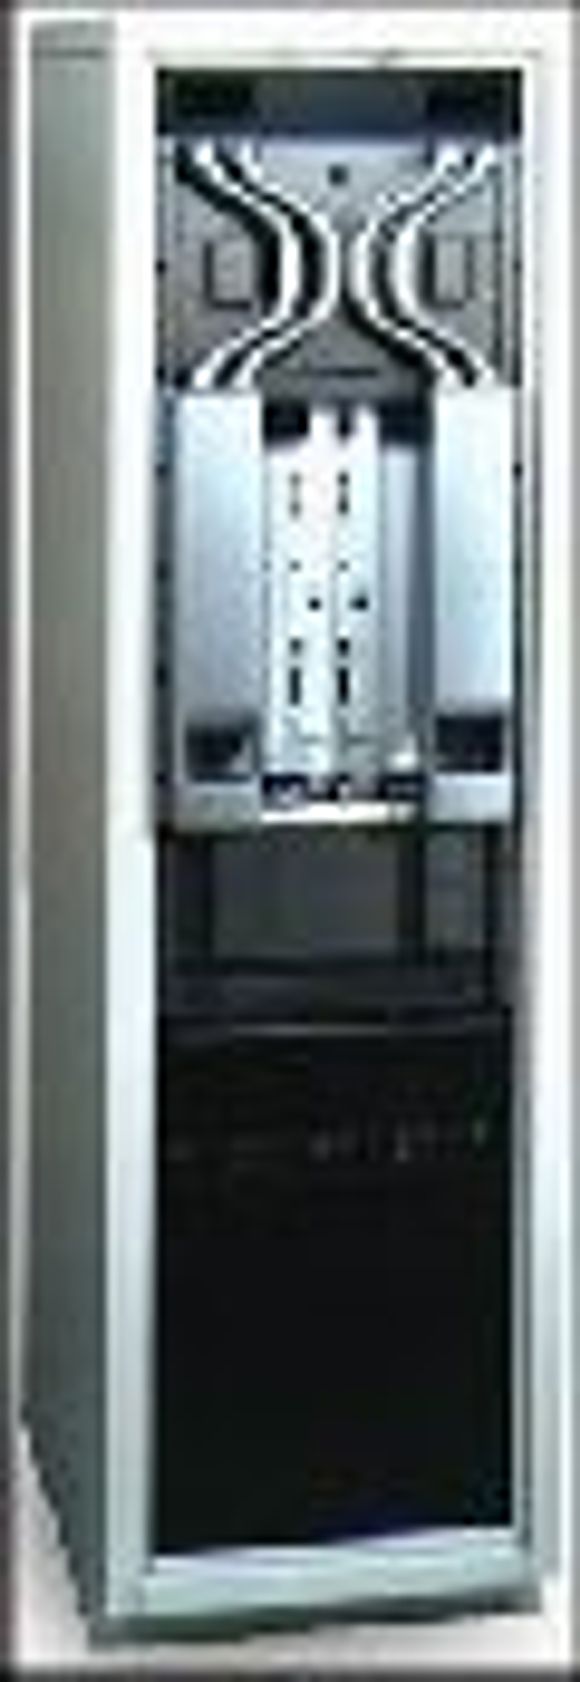 ForeRunner ASX-4000, 40 Gbps ATM-svitsj fra Fore. <i>Foto:  Fore</i>